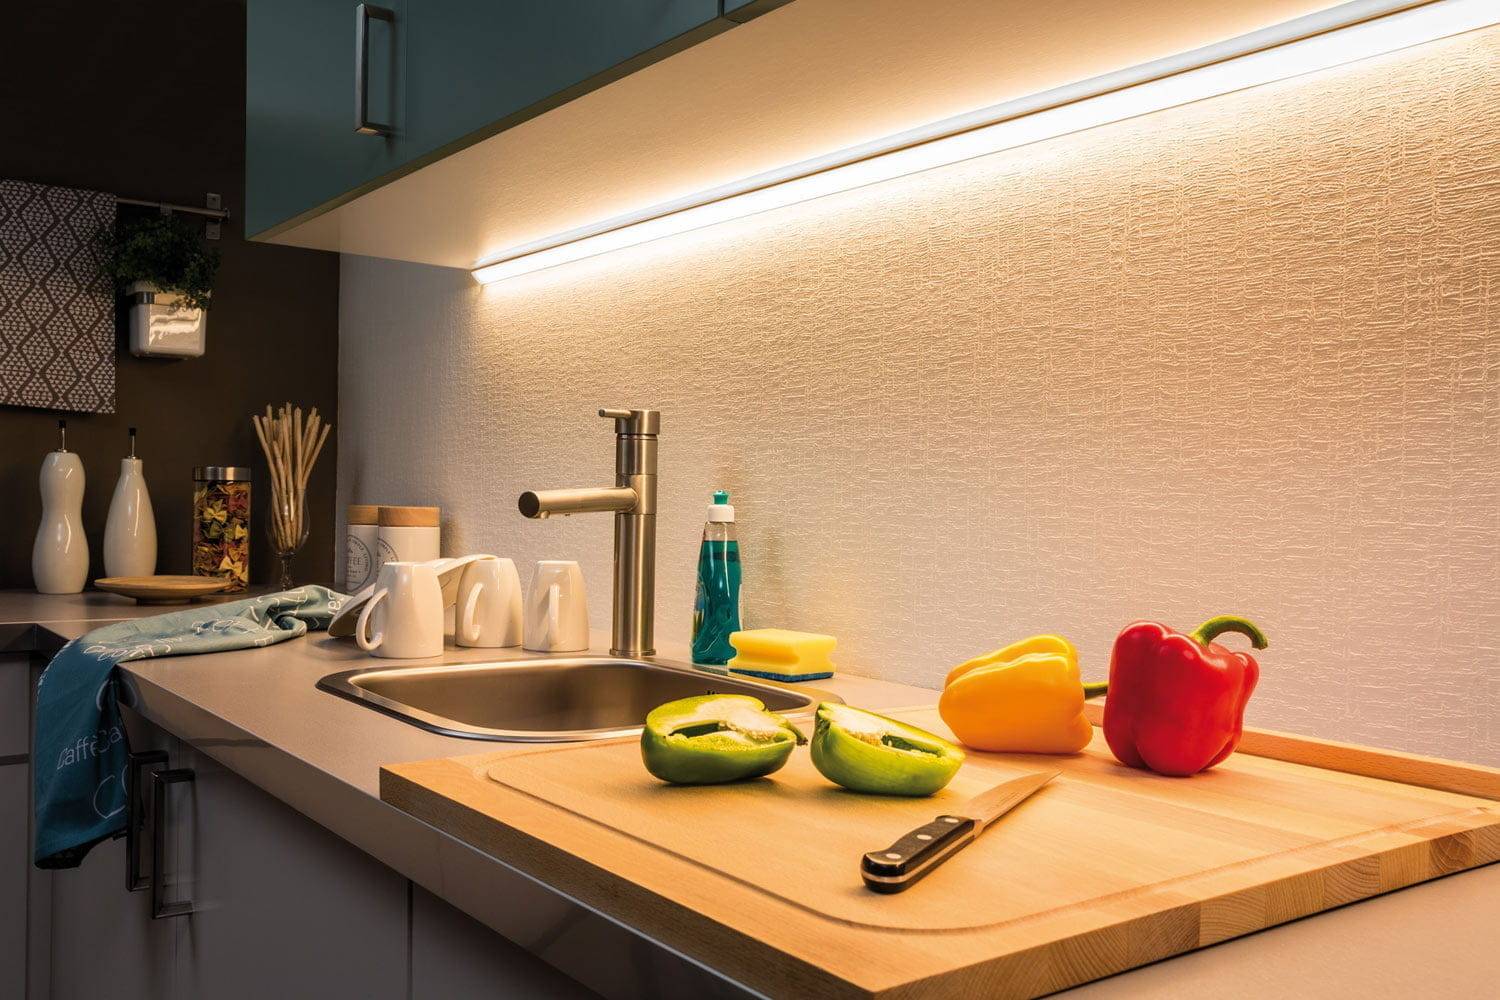 Кухонное освещение: как сделать правильно, советы + идеи